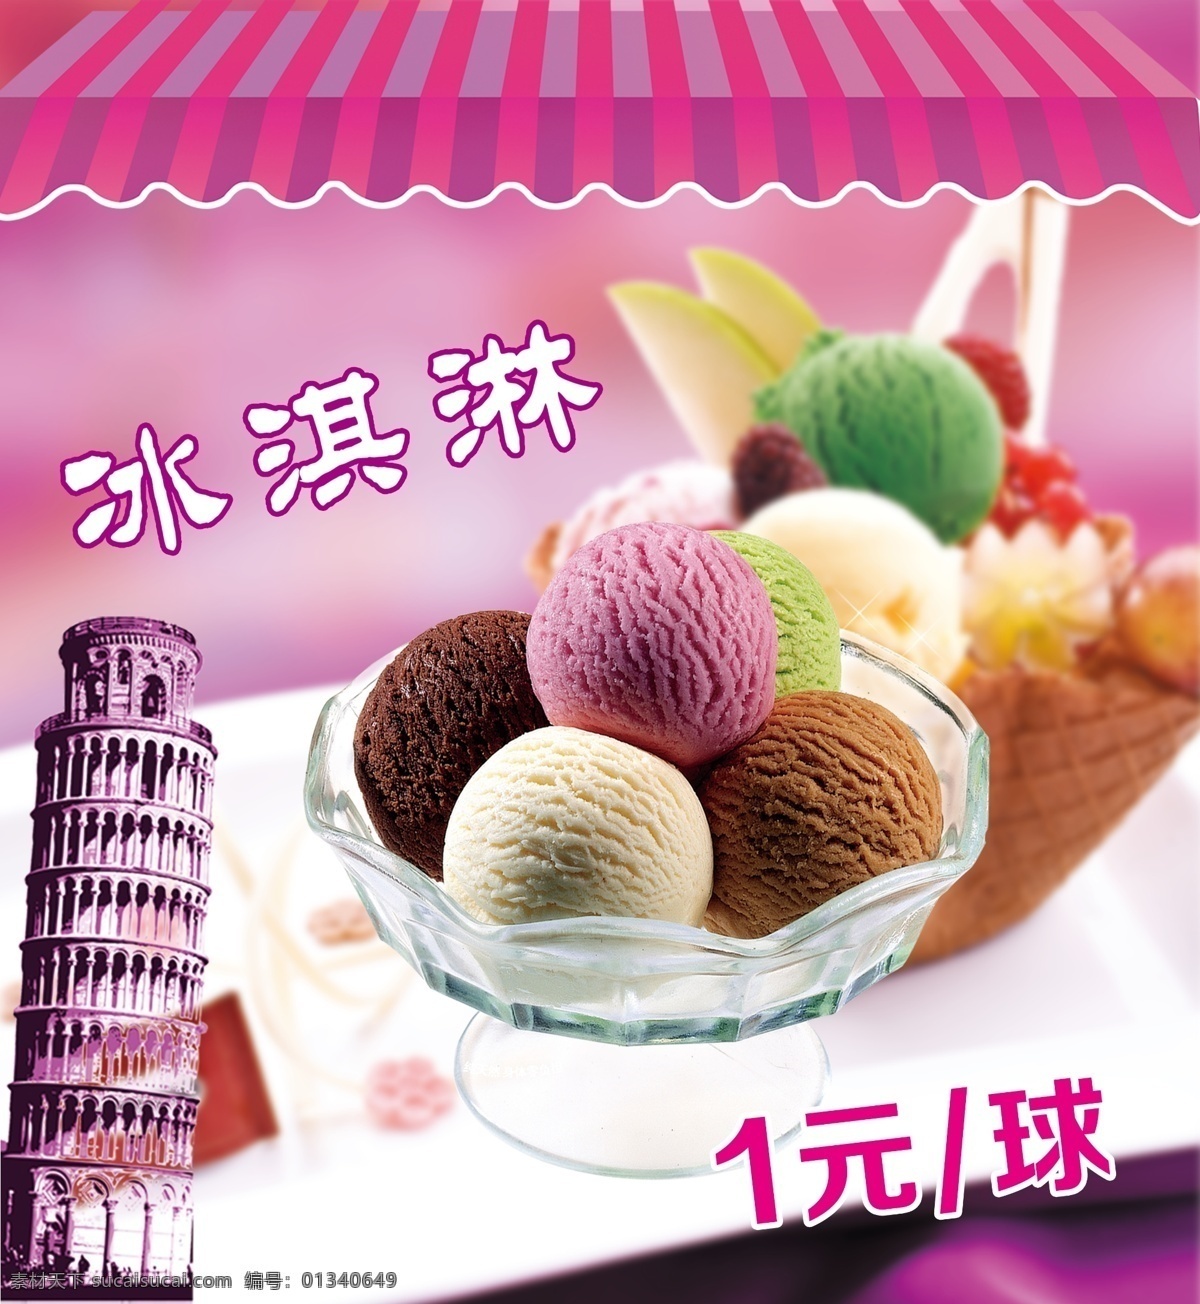 冰淇淋图片 冰淇淋 冰淇淋球 紫色海报背景 饮品宣传背景 冰果